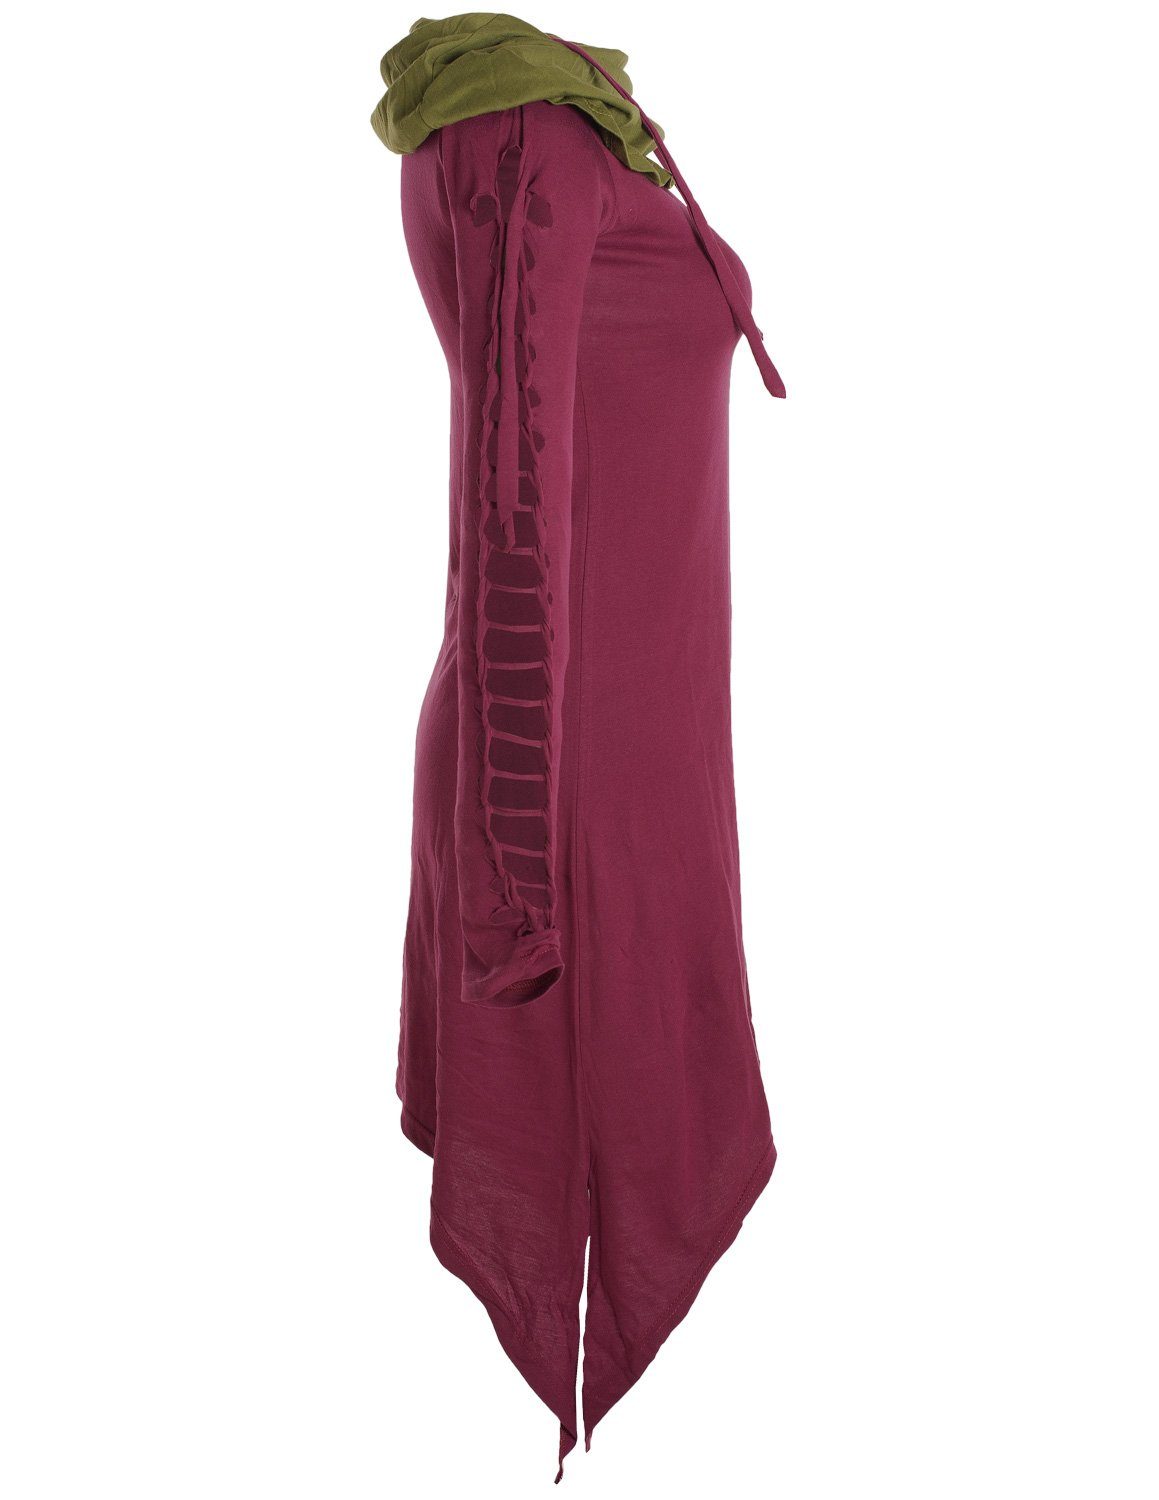 aus Vishes Biobaumwolle Zipfelkleid Boho, Ethne, Elfen Kleid dunkelrot Zweifarbiges Schalkragen langarm Style Goa, mit